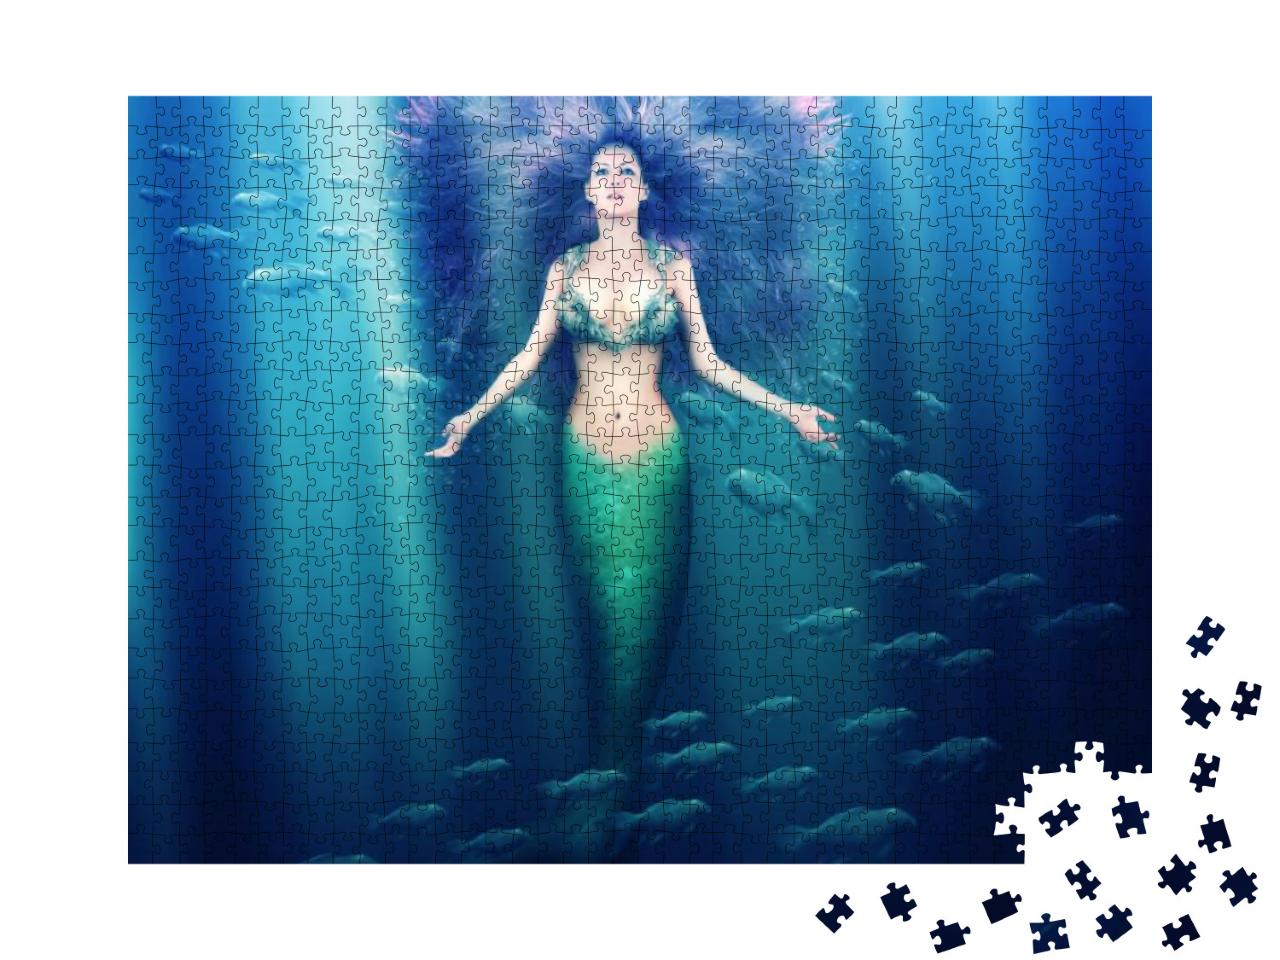 Puzzle 1000 Teile „Wunderschöne Fantasy-Meerjungfrau mit fließendem Haar“